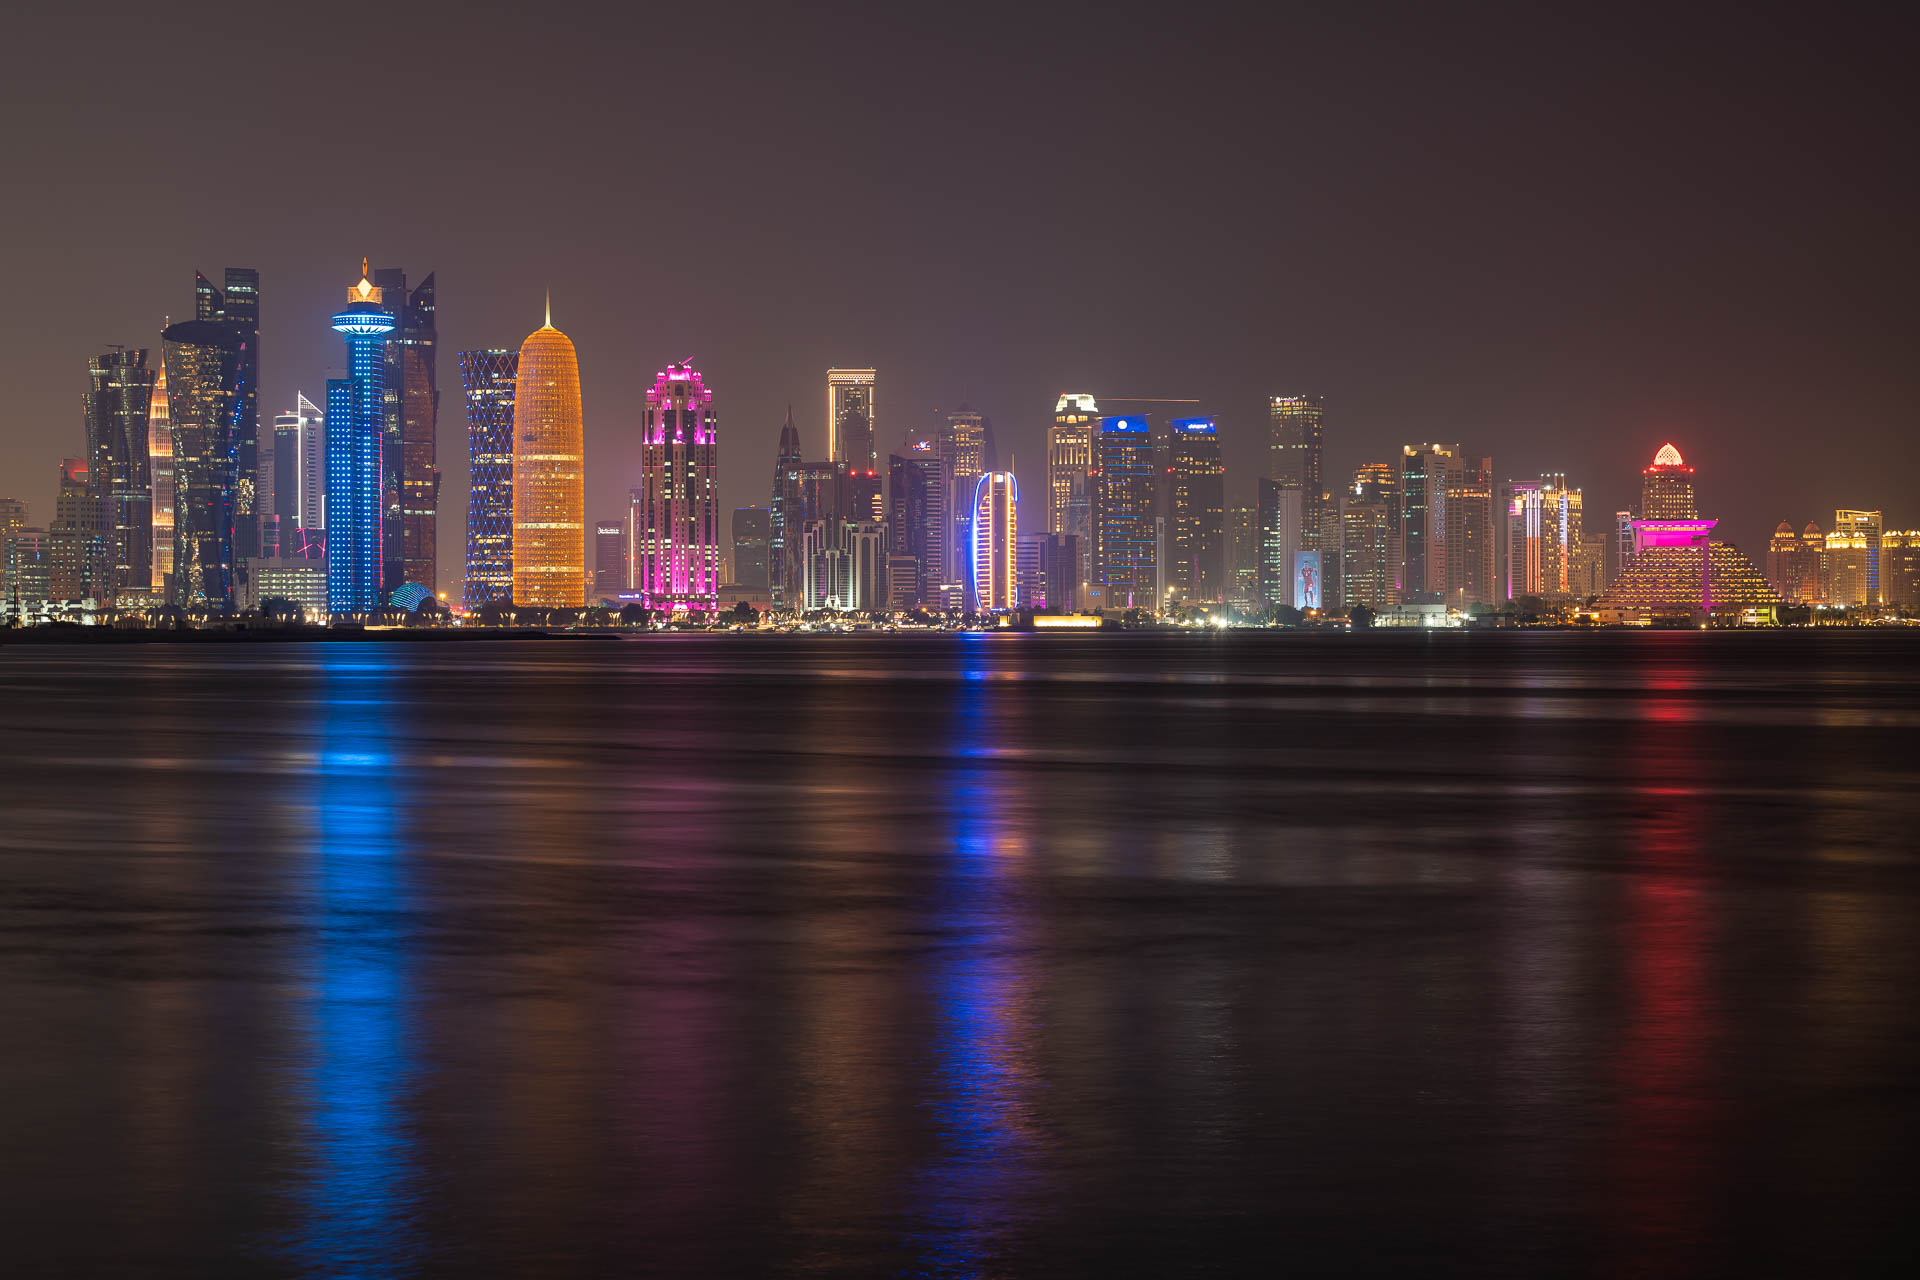 Vista panorâmica do centro de Doha com prédios altos e iluminados a noite na beira do mar